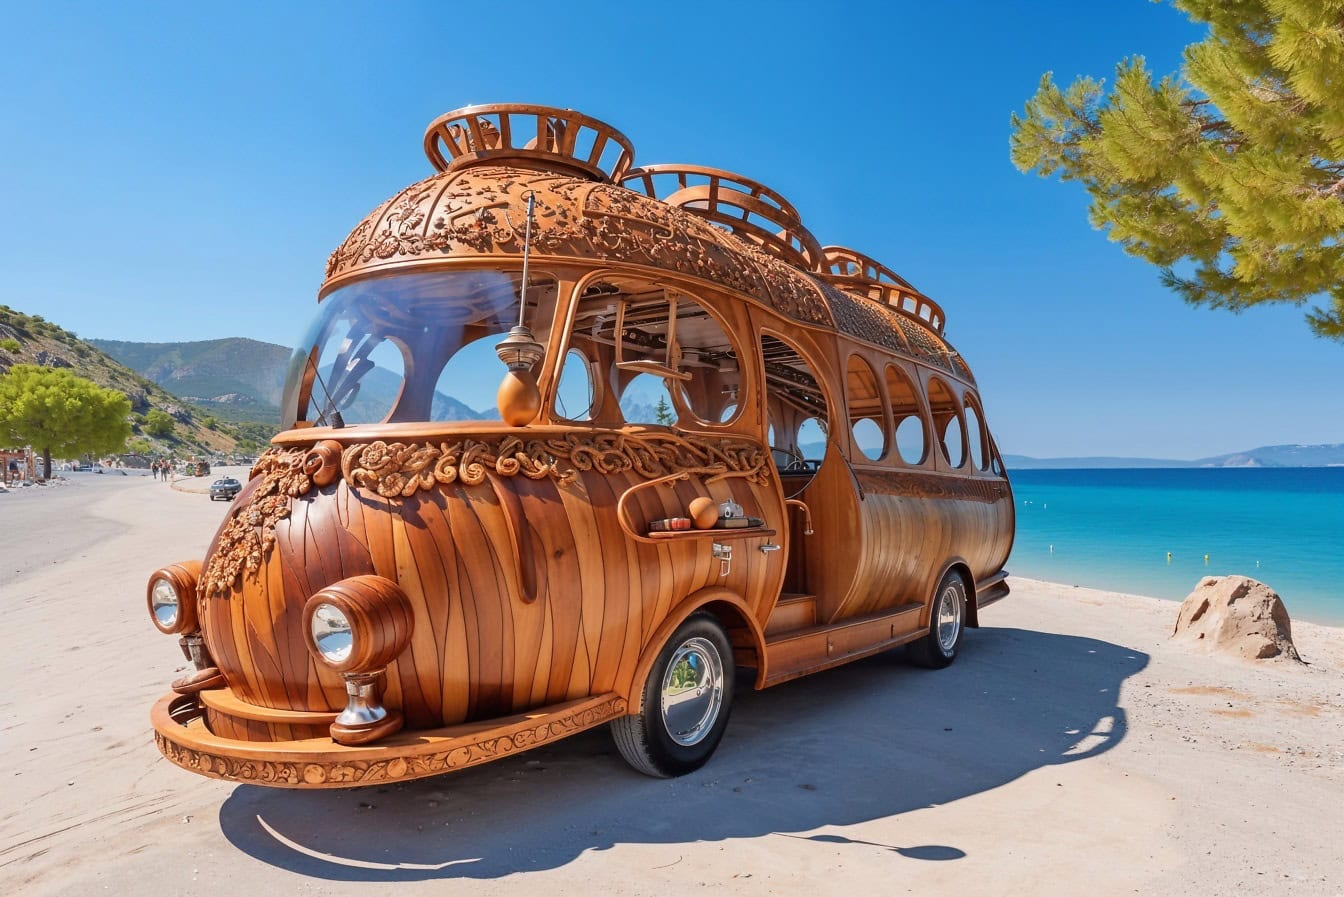 Um ônibus campista de madeira em estilo hippie em uma praia